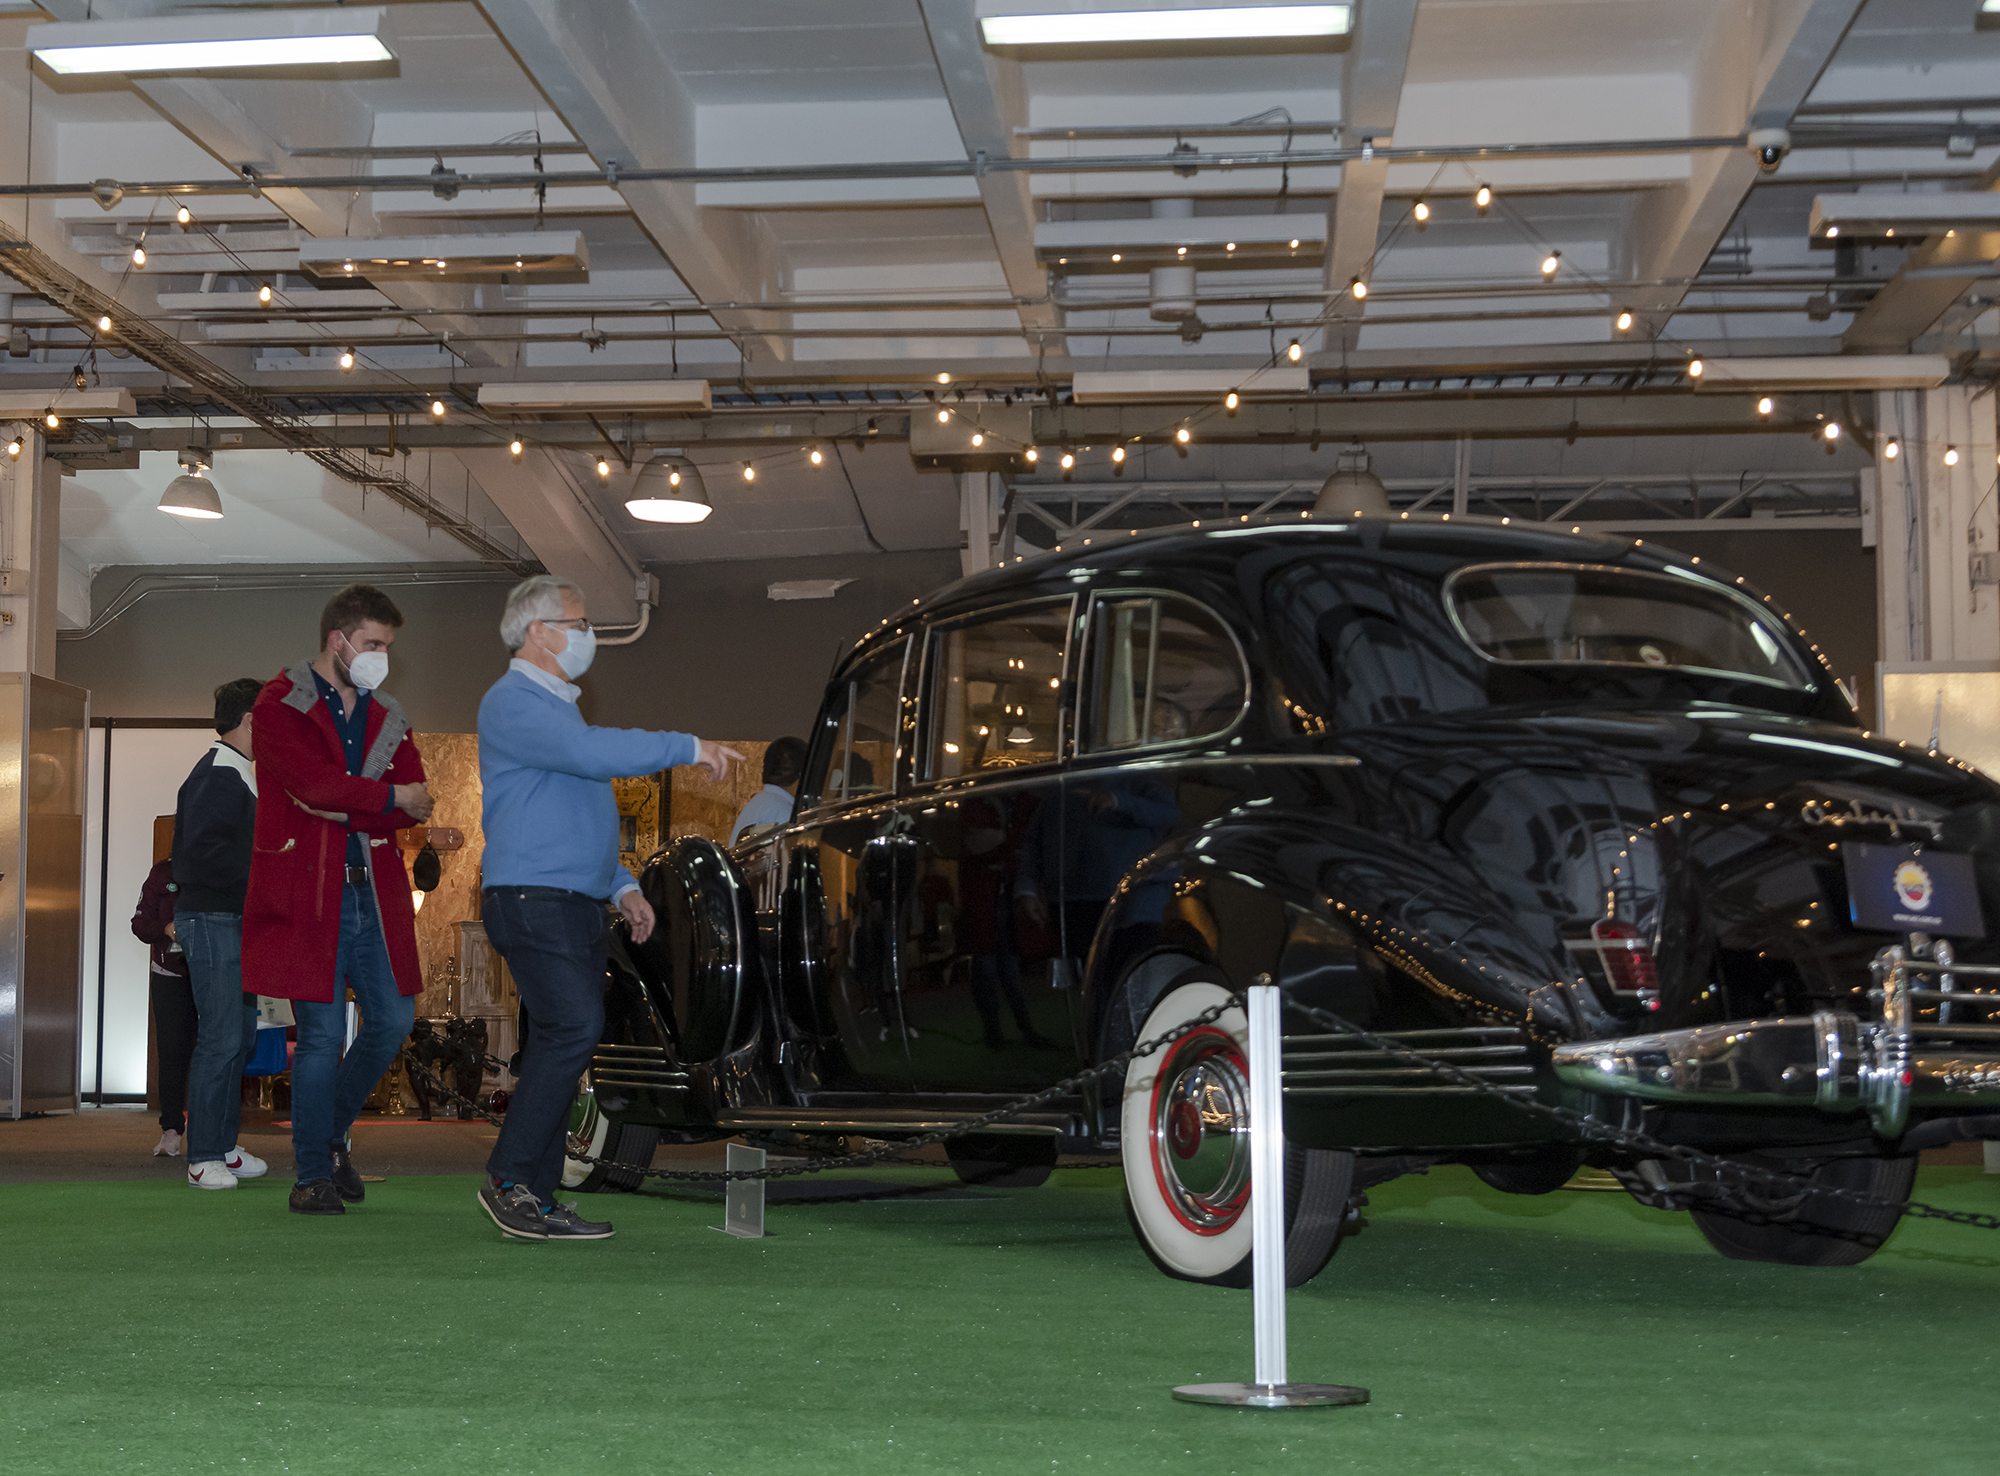 El marketfest vintage & antiguedades trae una espectacular muestra de autos de colección